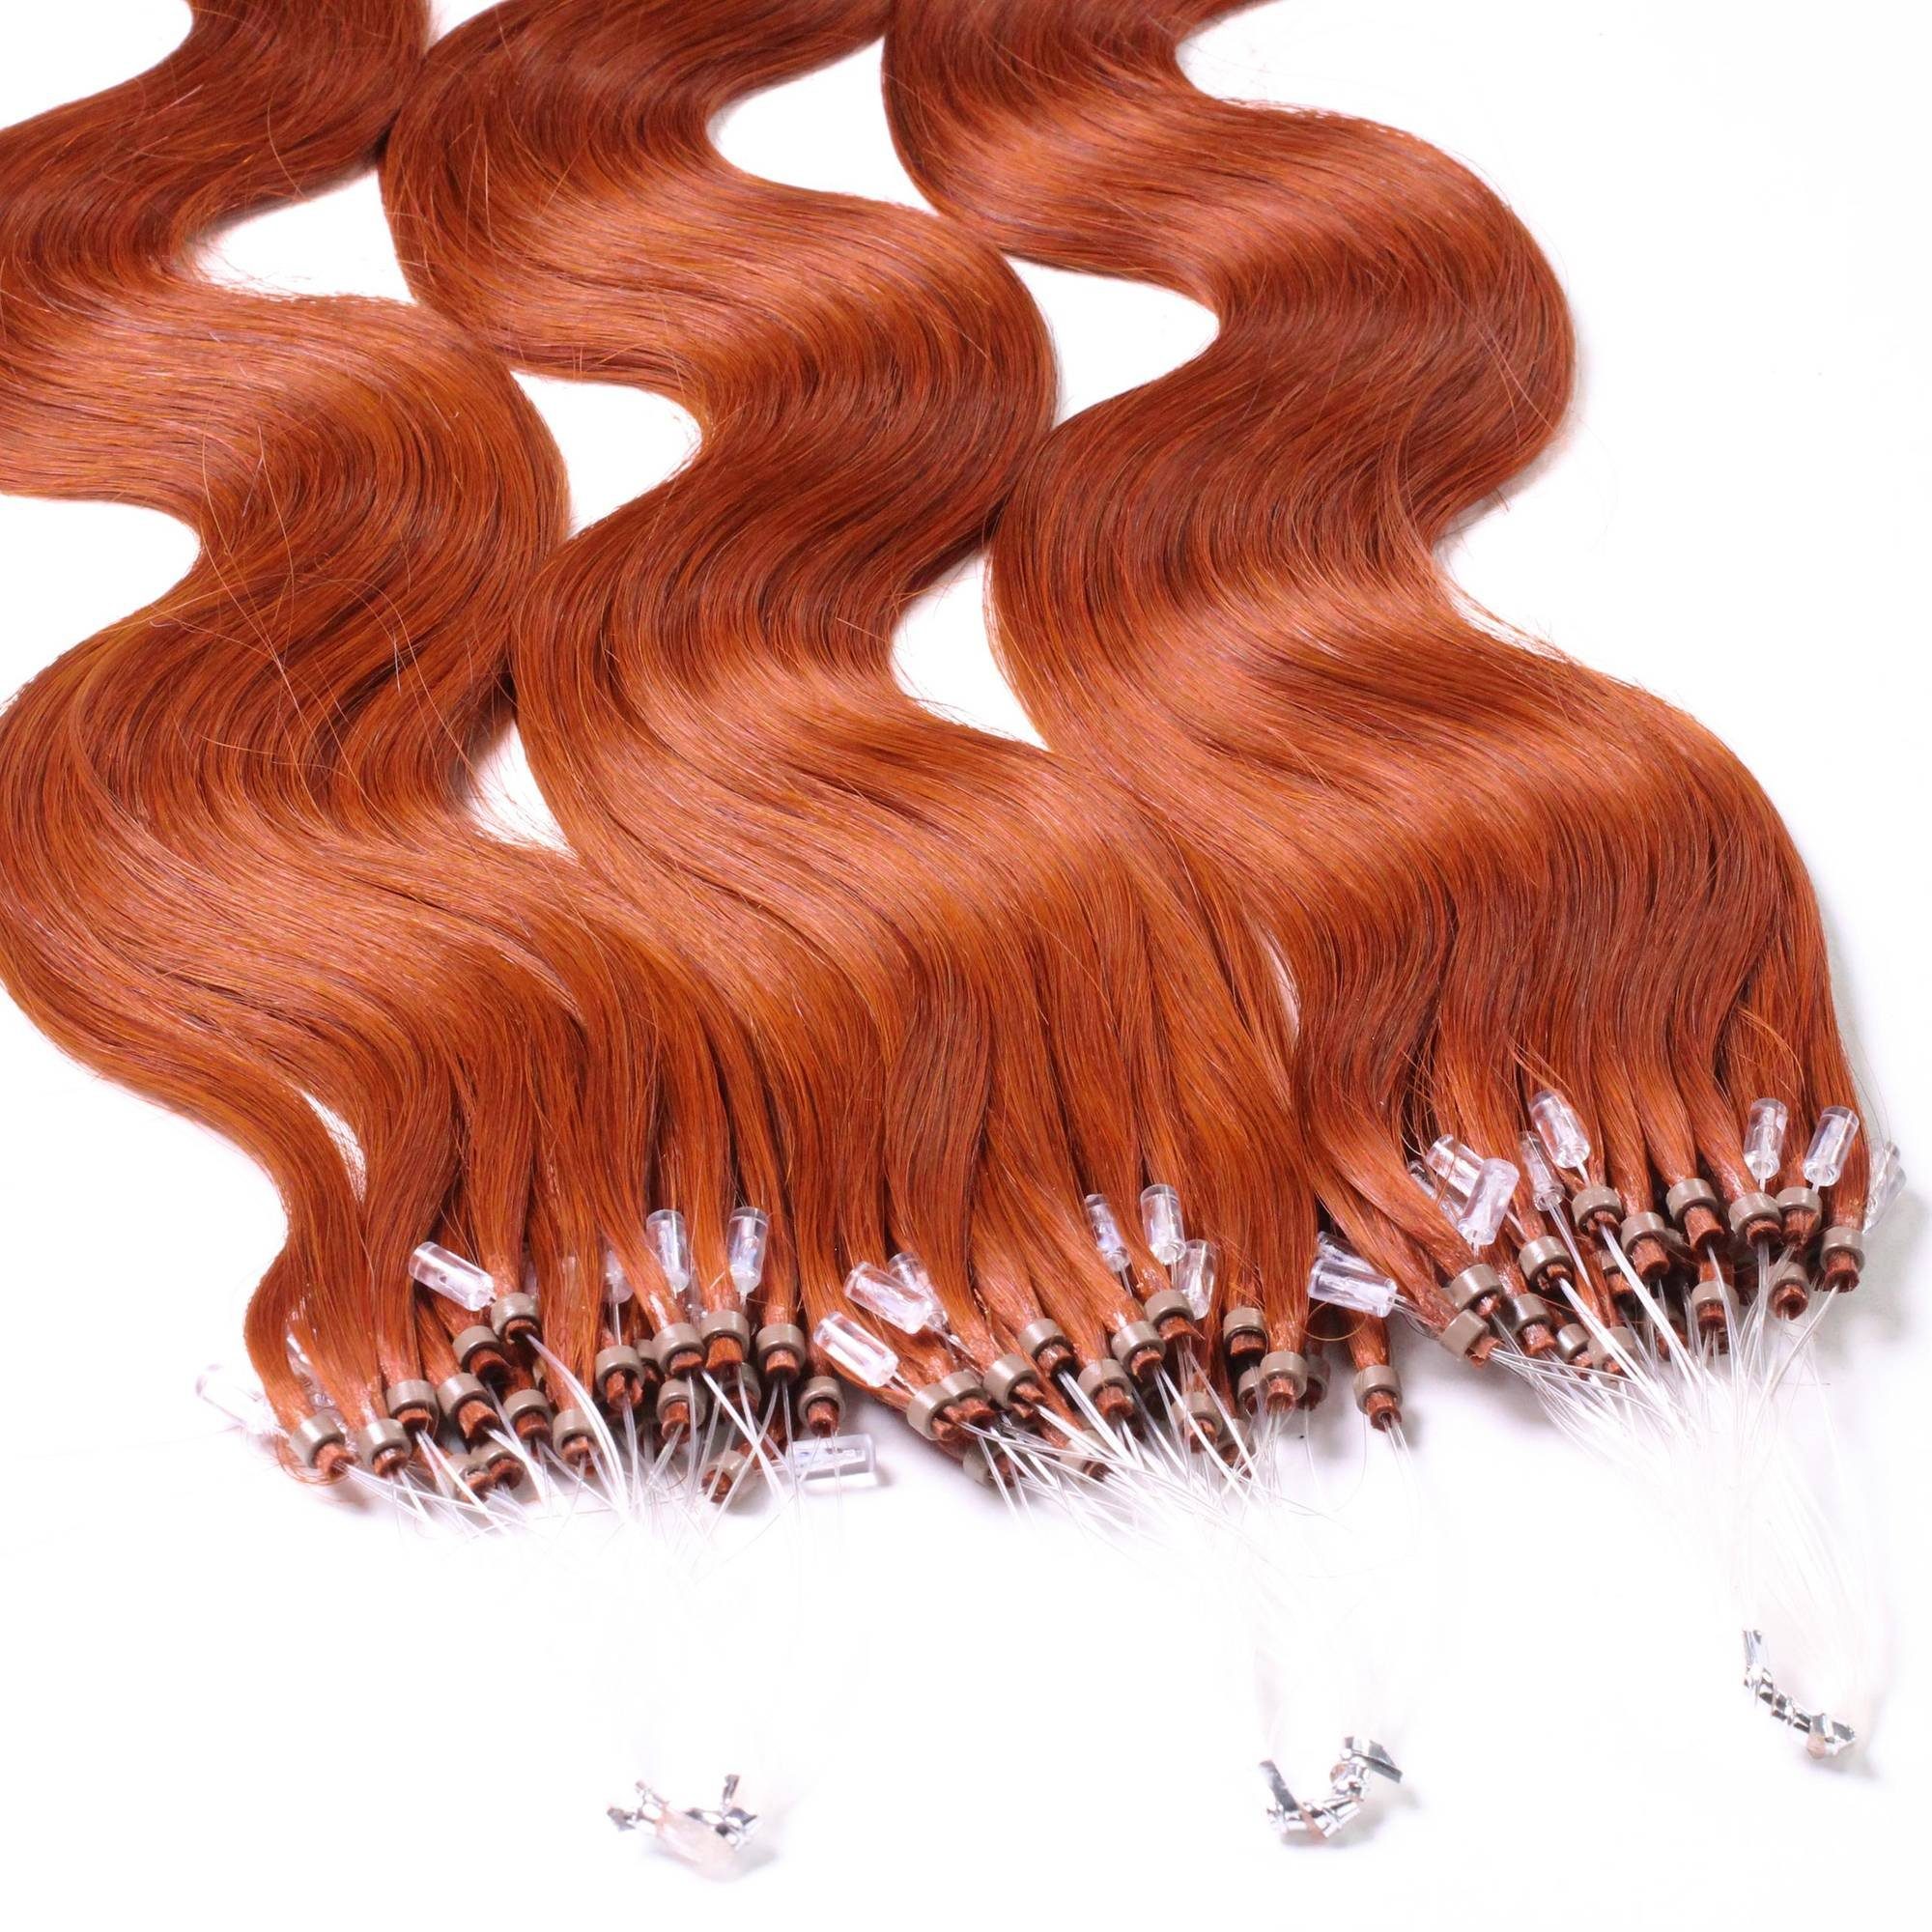 Echthaar-Extension - 0.5g Rot-Gold #8/43 hair2heart gewellt 40cm Microring Loops Hellblond